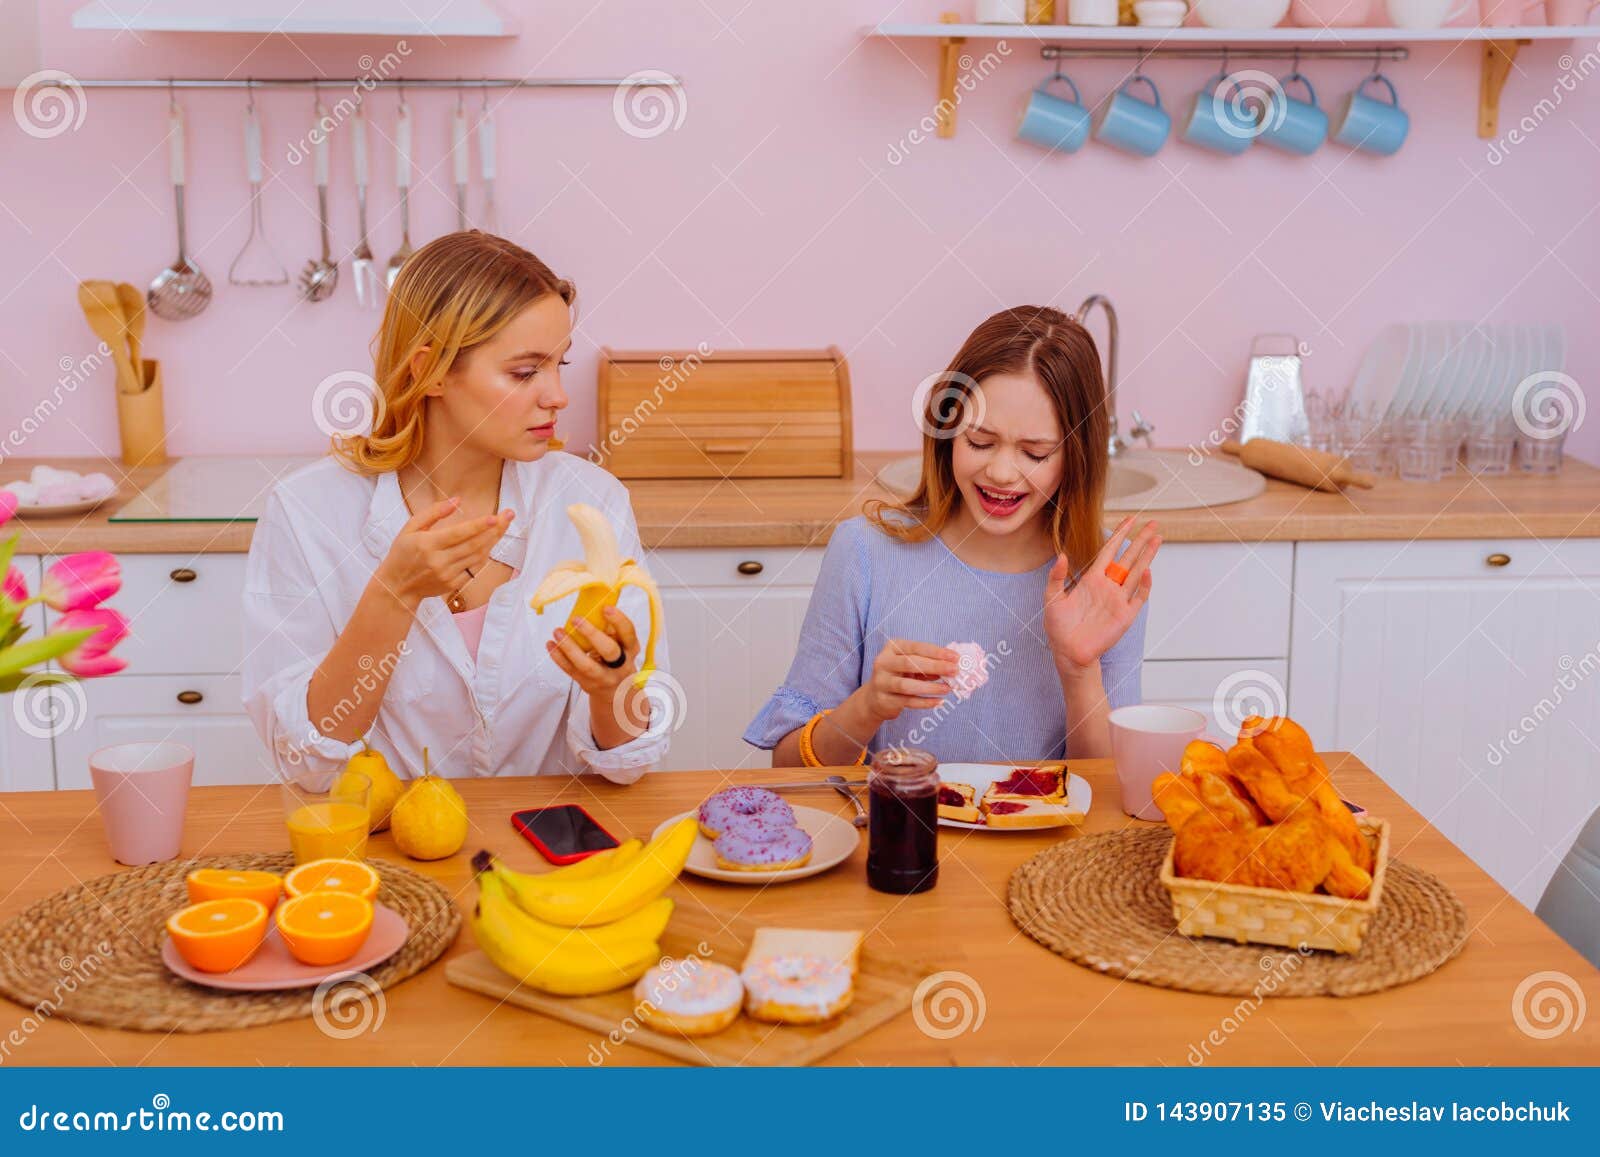 吃香蕉. 吃粉红色孤立的香蕉的性感女子. 年轻女人吃香蕉是为了感到幸福. 热带 库存图片 - 图片 包括有 命令, 成人: 213039501